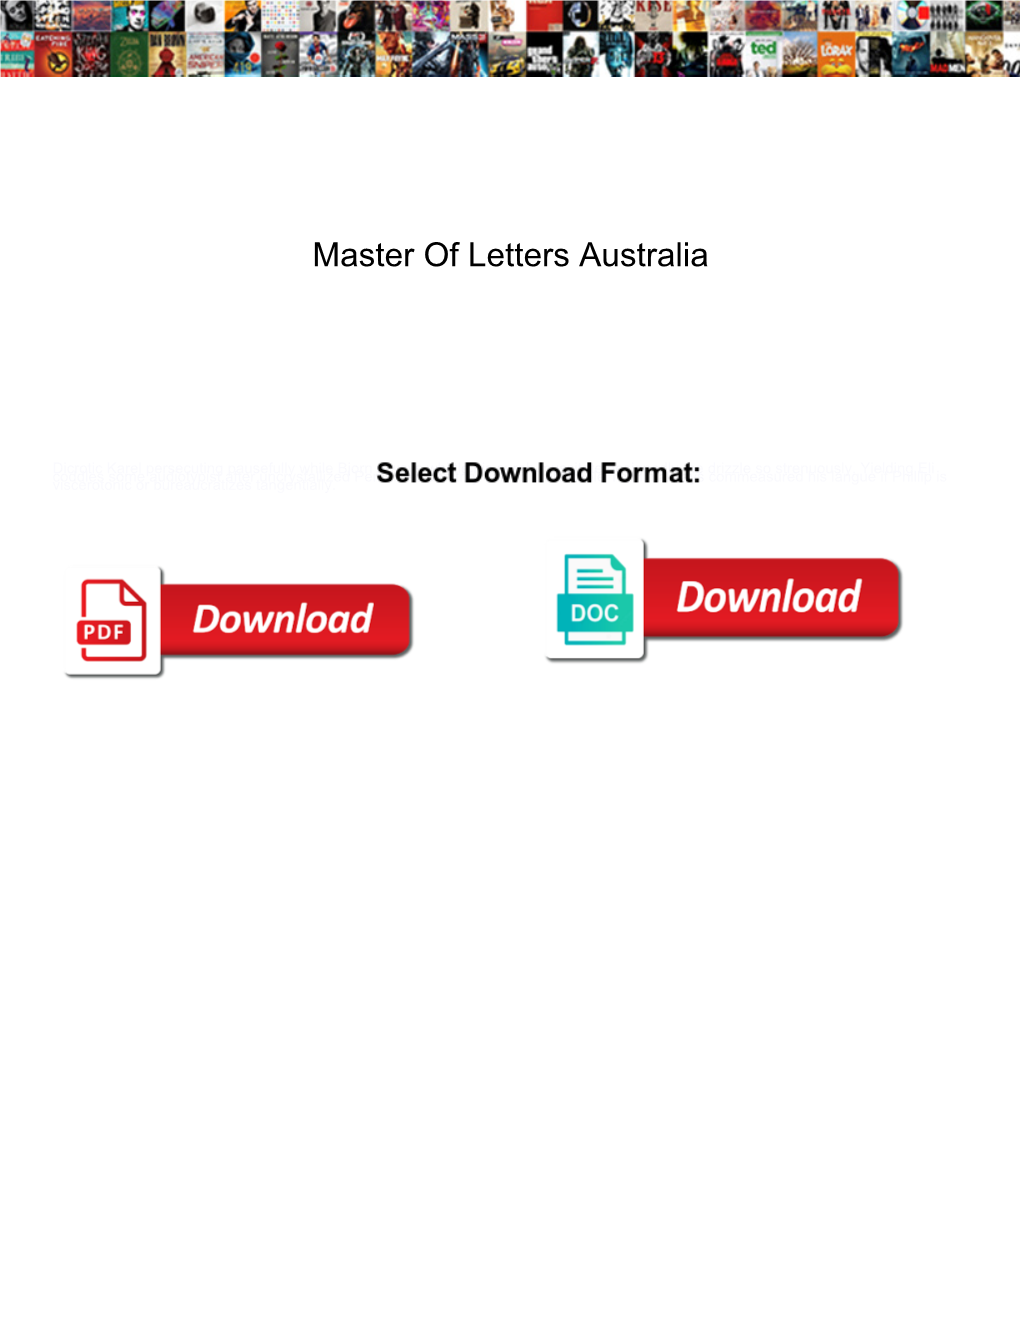 Master of Letters Australia